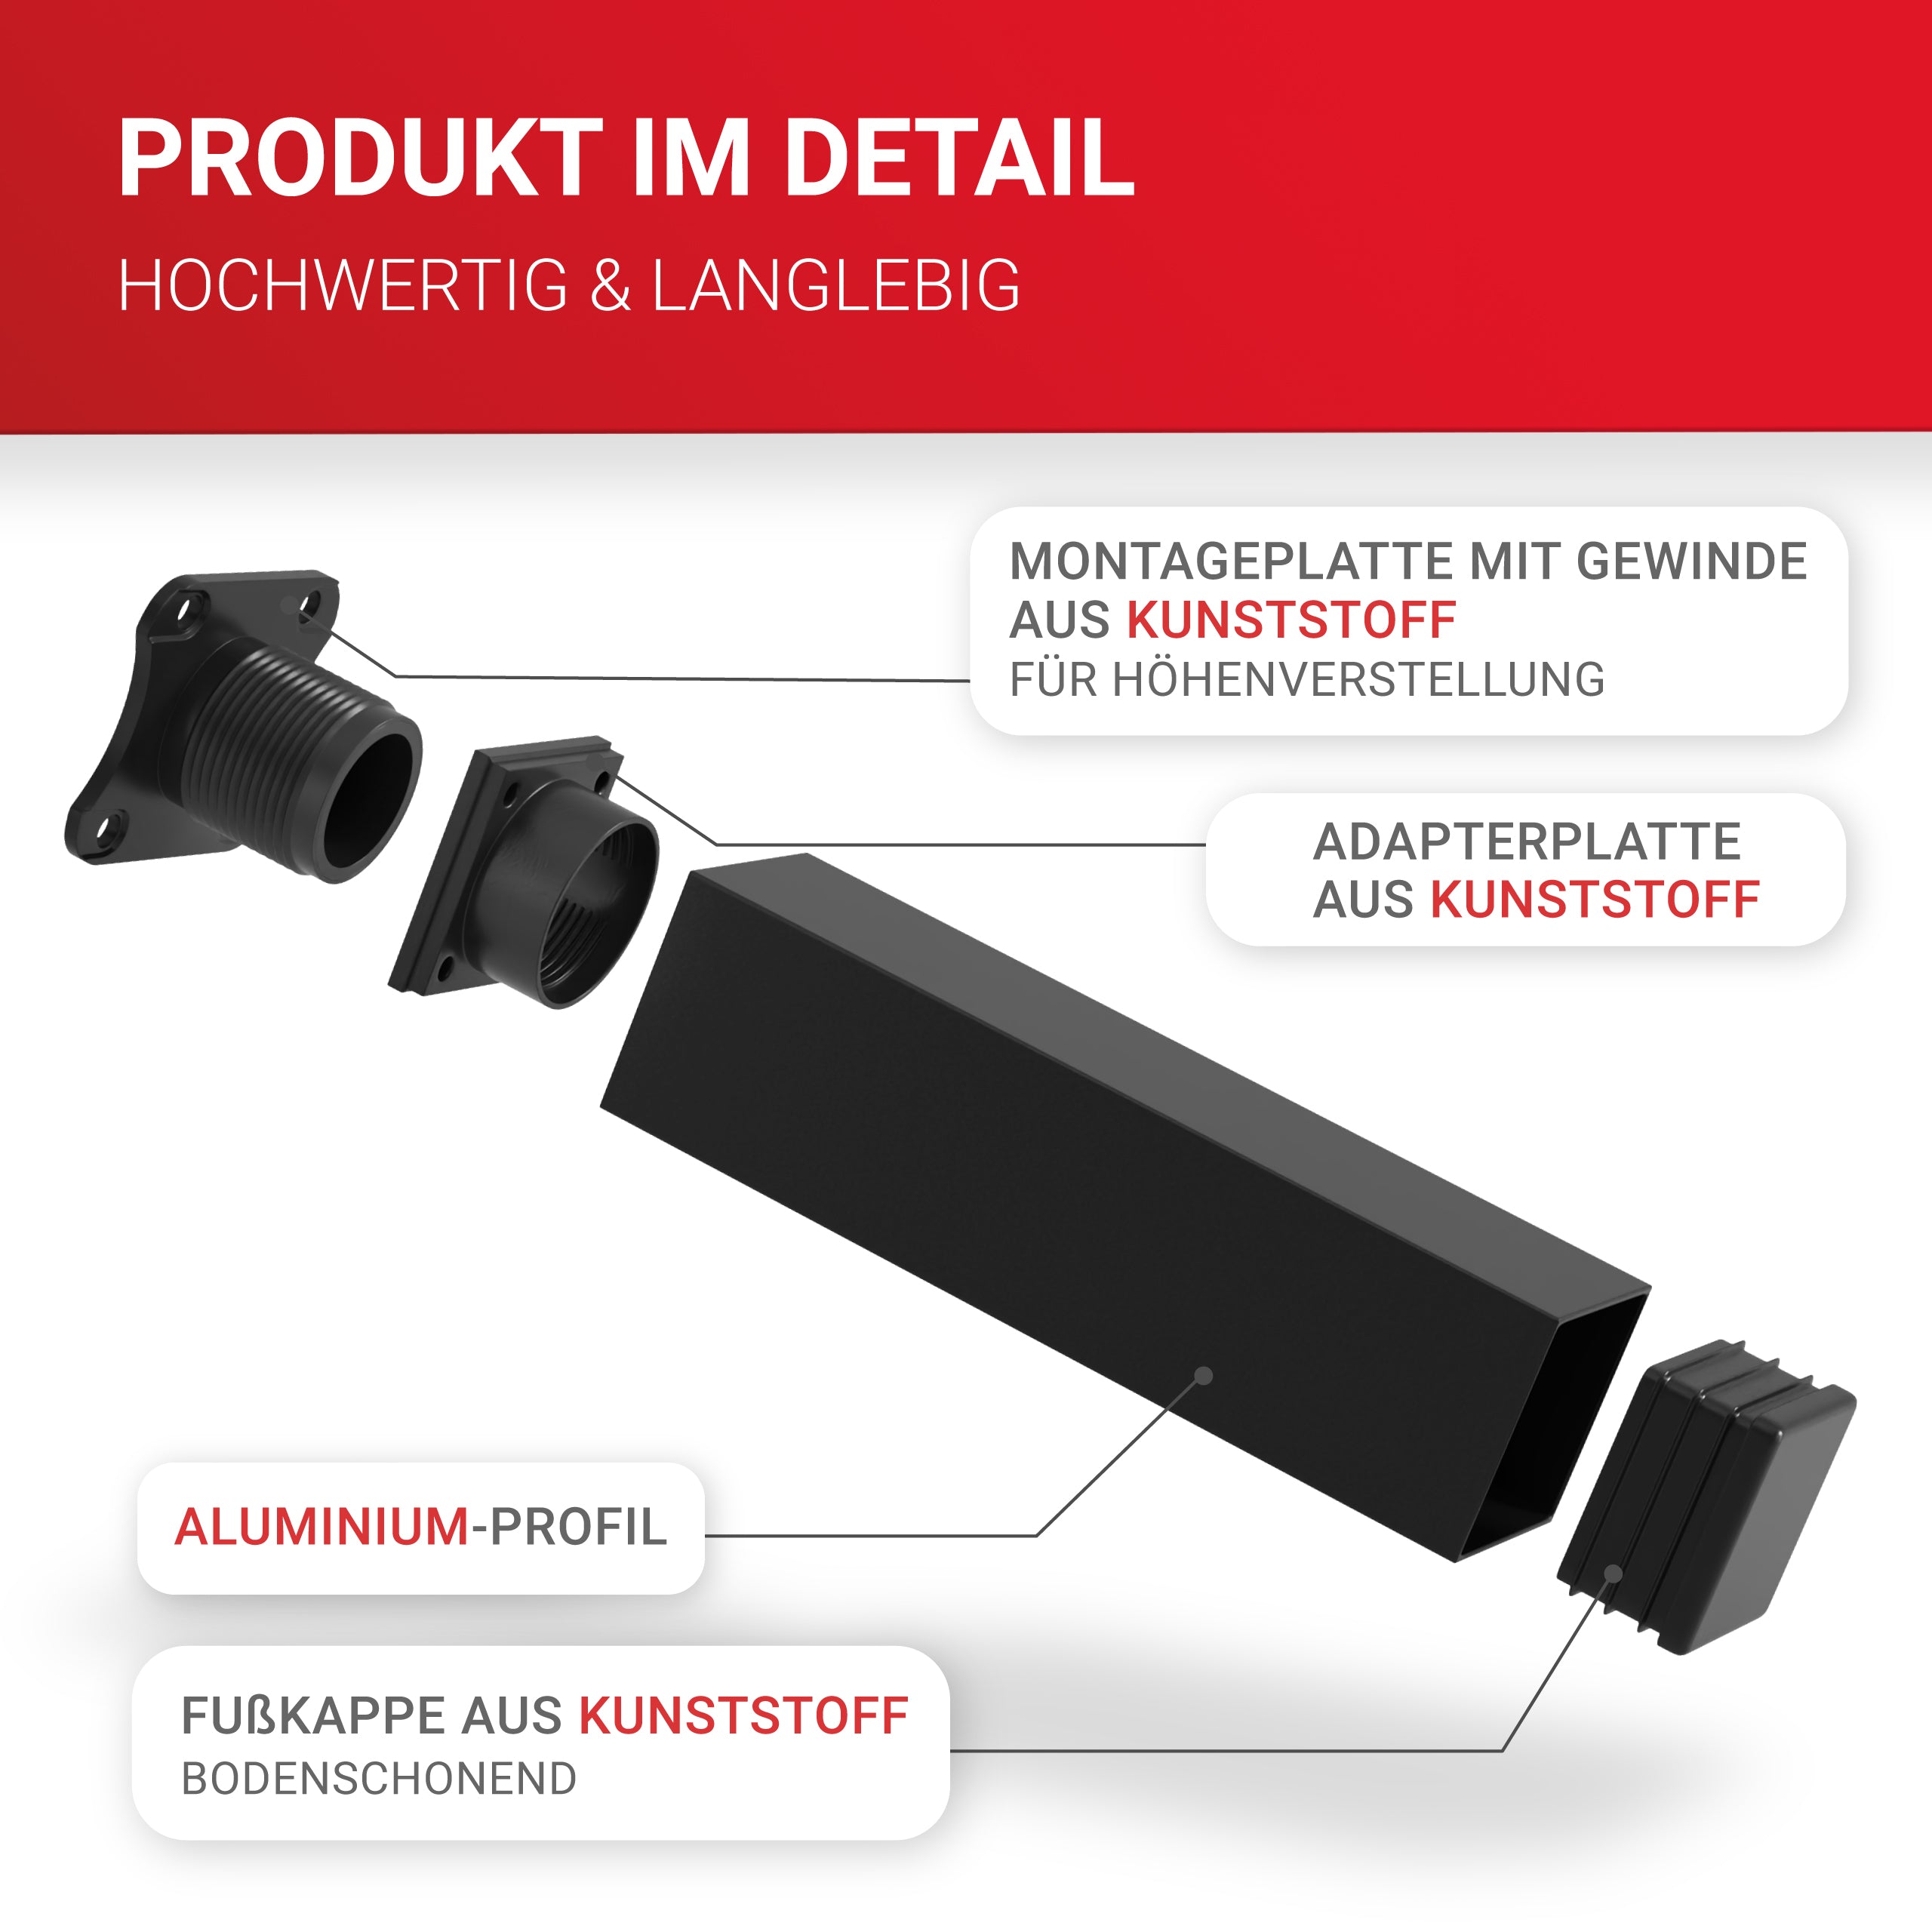 LouMaxx Möbelfüße verstellbar eckig– 4er Set 40x40x60mm in Schwarz inkl. Befestigungsplatte – Füße für Möbel aus Aluminium